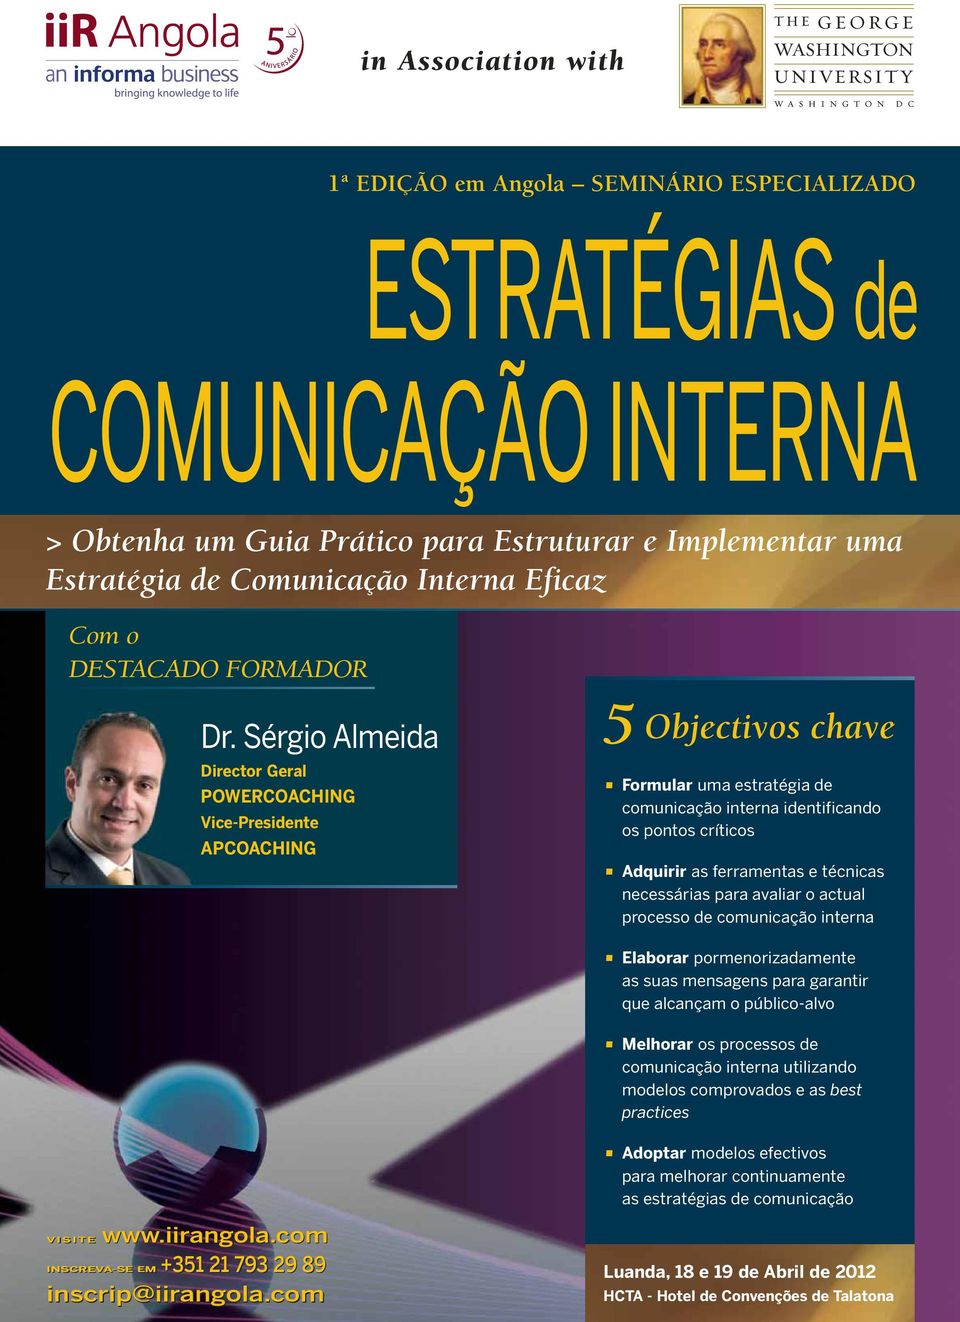 Sérgio Almeida Director Geral POWERCOACHING Vice-Presidente APCOACHING 5 Objectivos chave Formular uma estratégia de comunicação interna identificando os pontos críticos Adquirir as ferramentas e